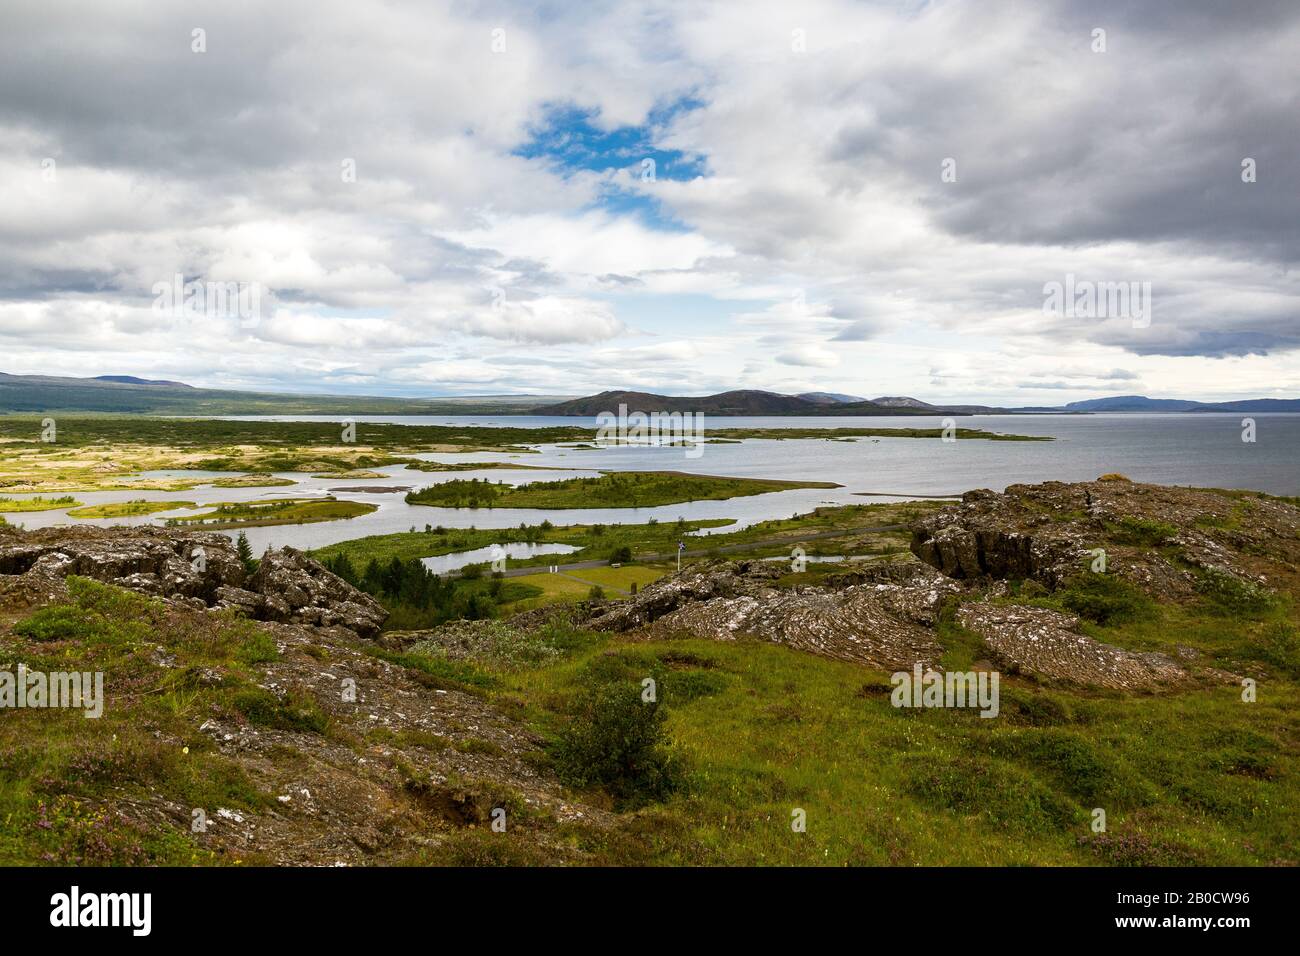 Þingvellir, Islande - la rupture entre l'Europe et l'Amérique du Nord des plaques continentales. Les plaques tectoniques convergent en Islande Banque D'Images